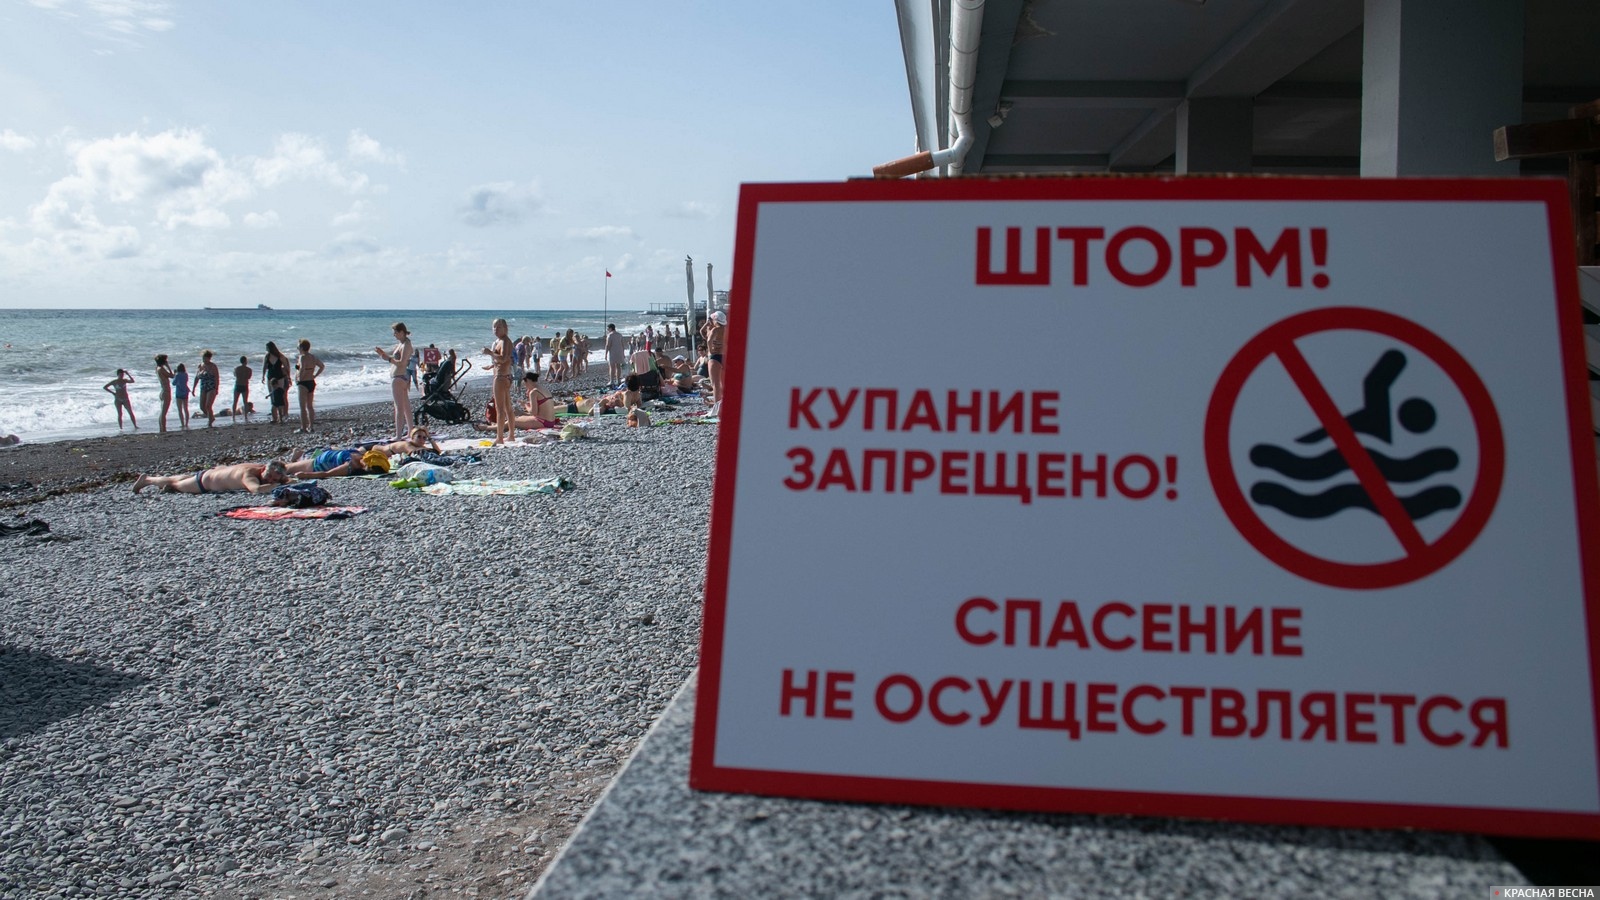 Предупреждение о шторме. Ялта, Крым